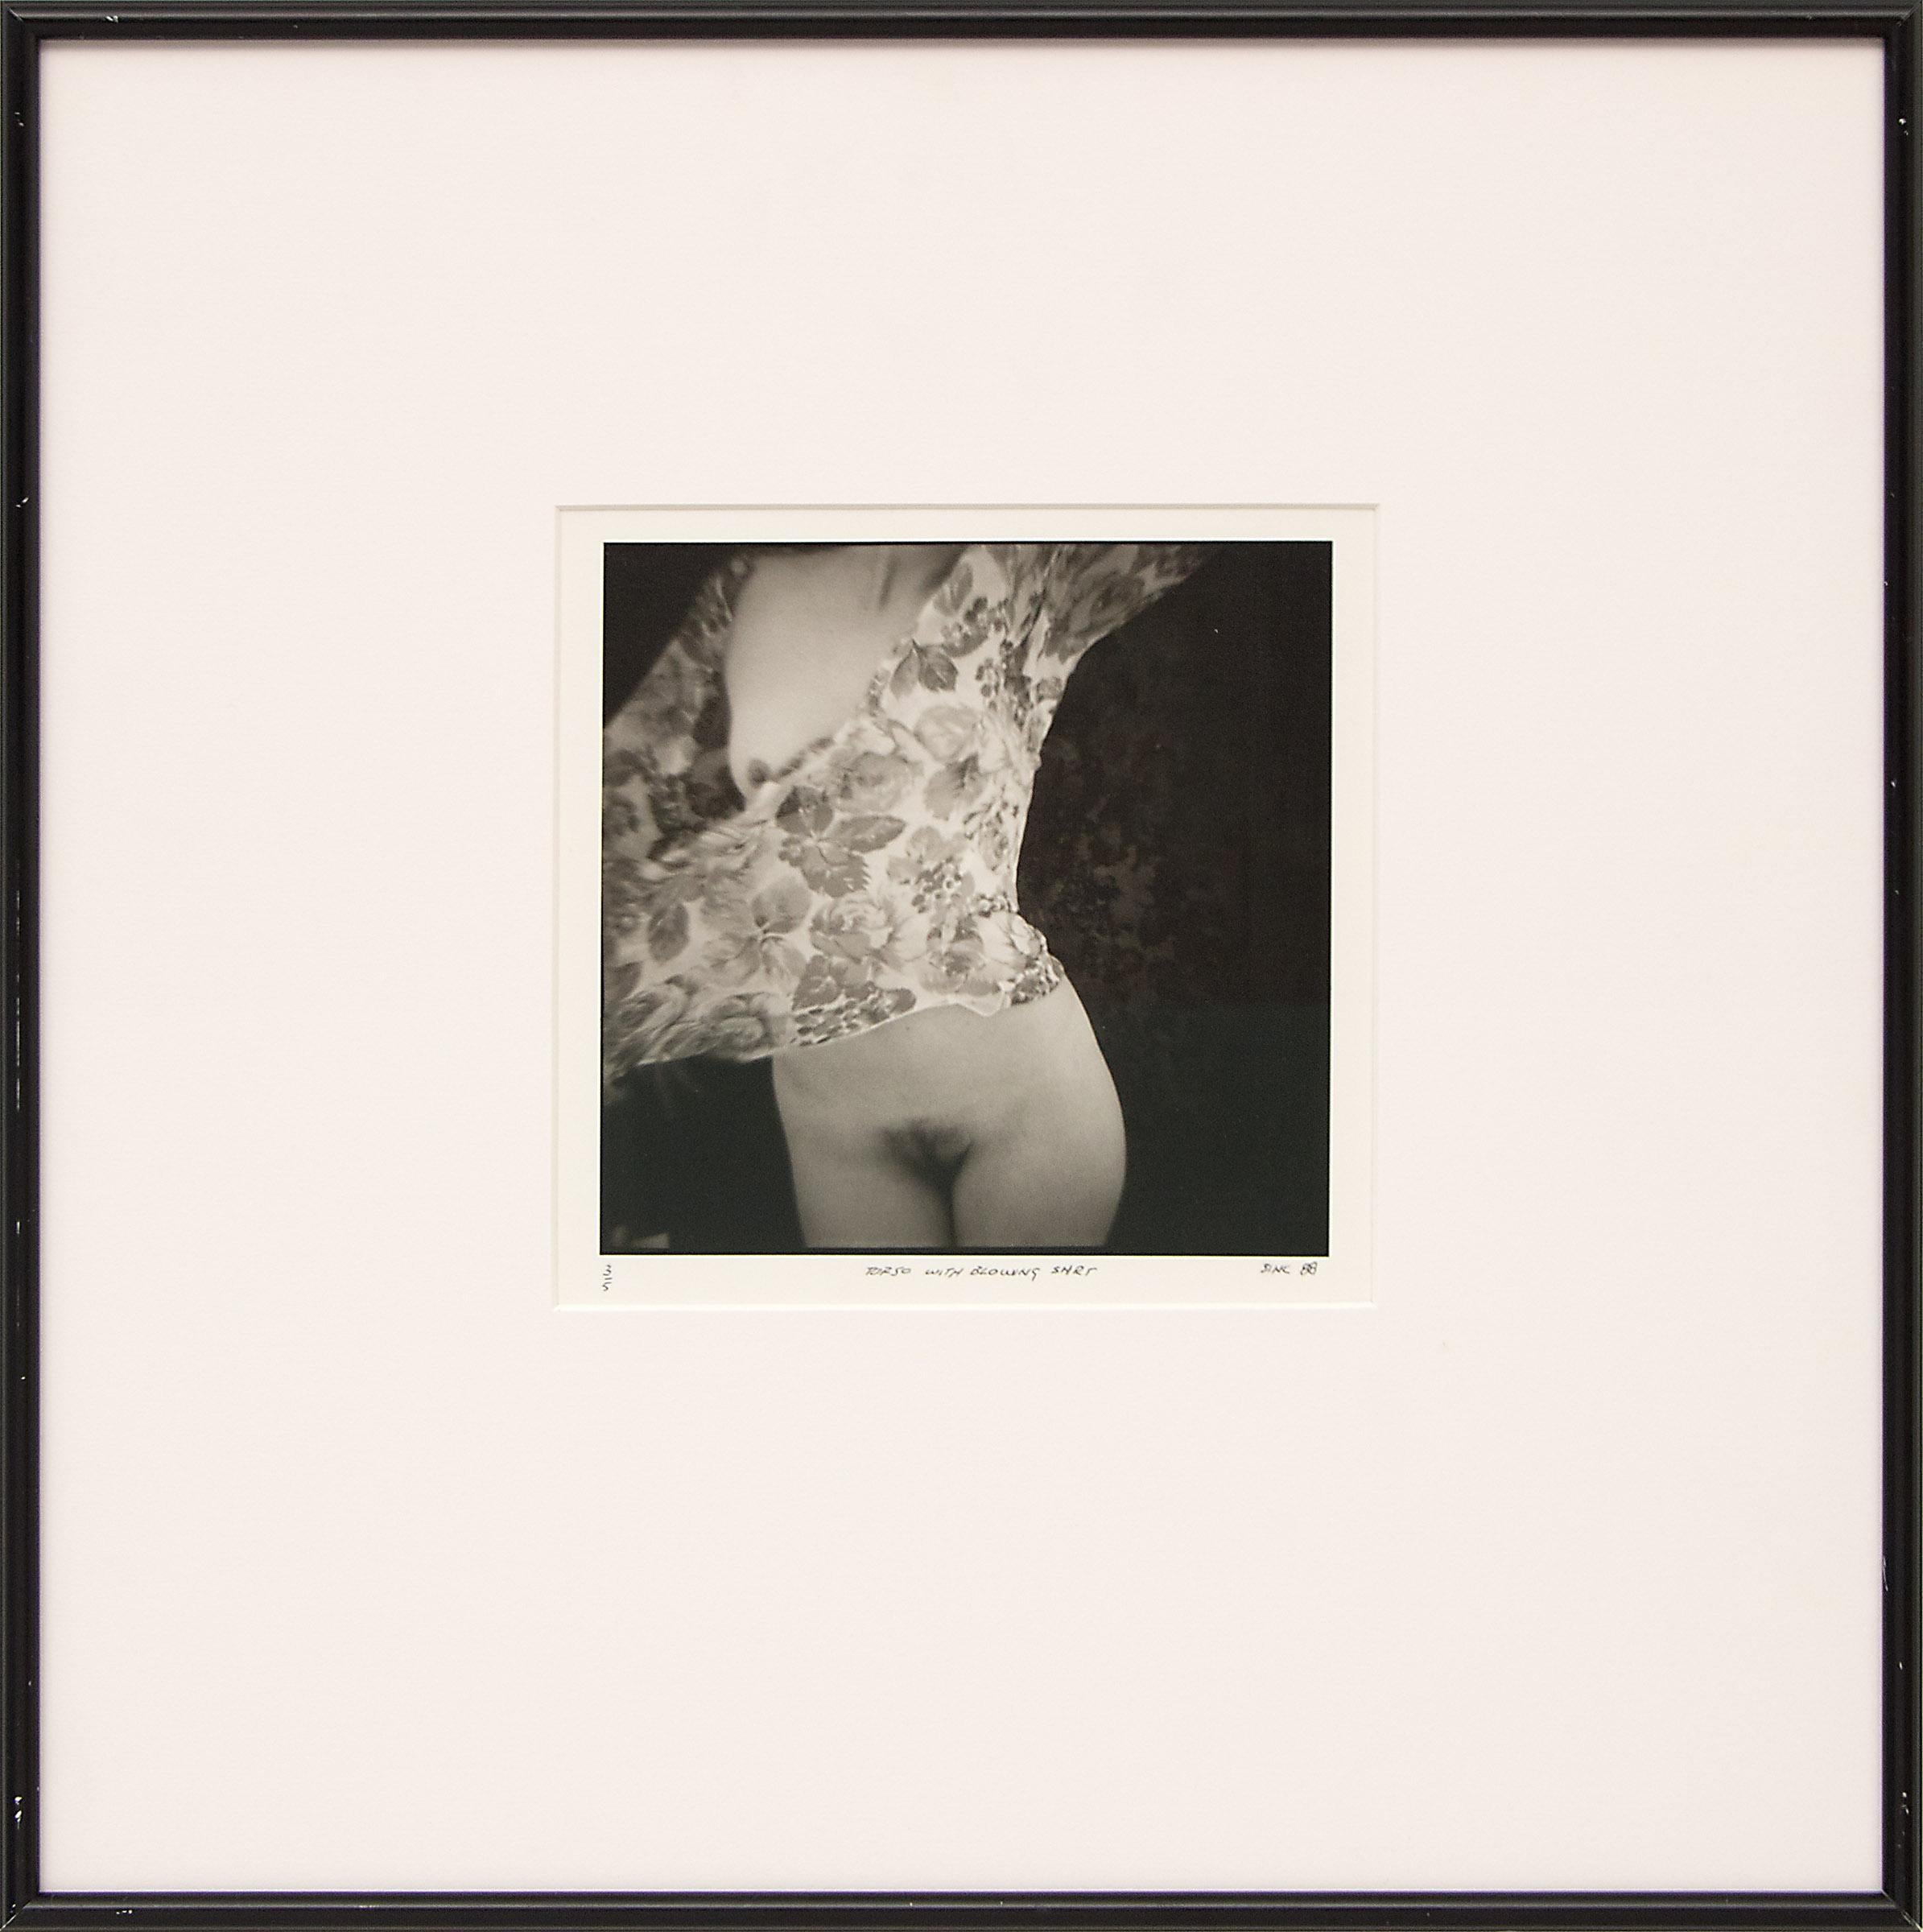 Aktfotografie mit dem Titel "Torso mit wehendem Hemd (3/5)", signiert und datiert vom zeitgenössischen Künstler Mark Sink (geb. 1958), aufgenommen 1988. Ausgestellt als Teil von "Twelve Nudes and a Gargoyle" in der Willoughby Sharp Galerie in NYC